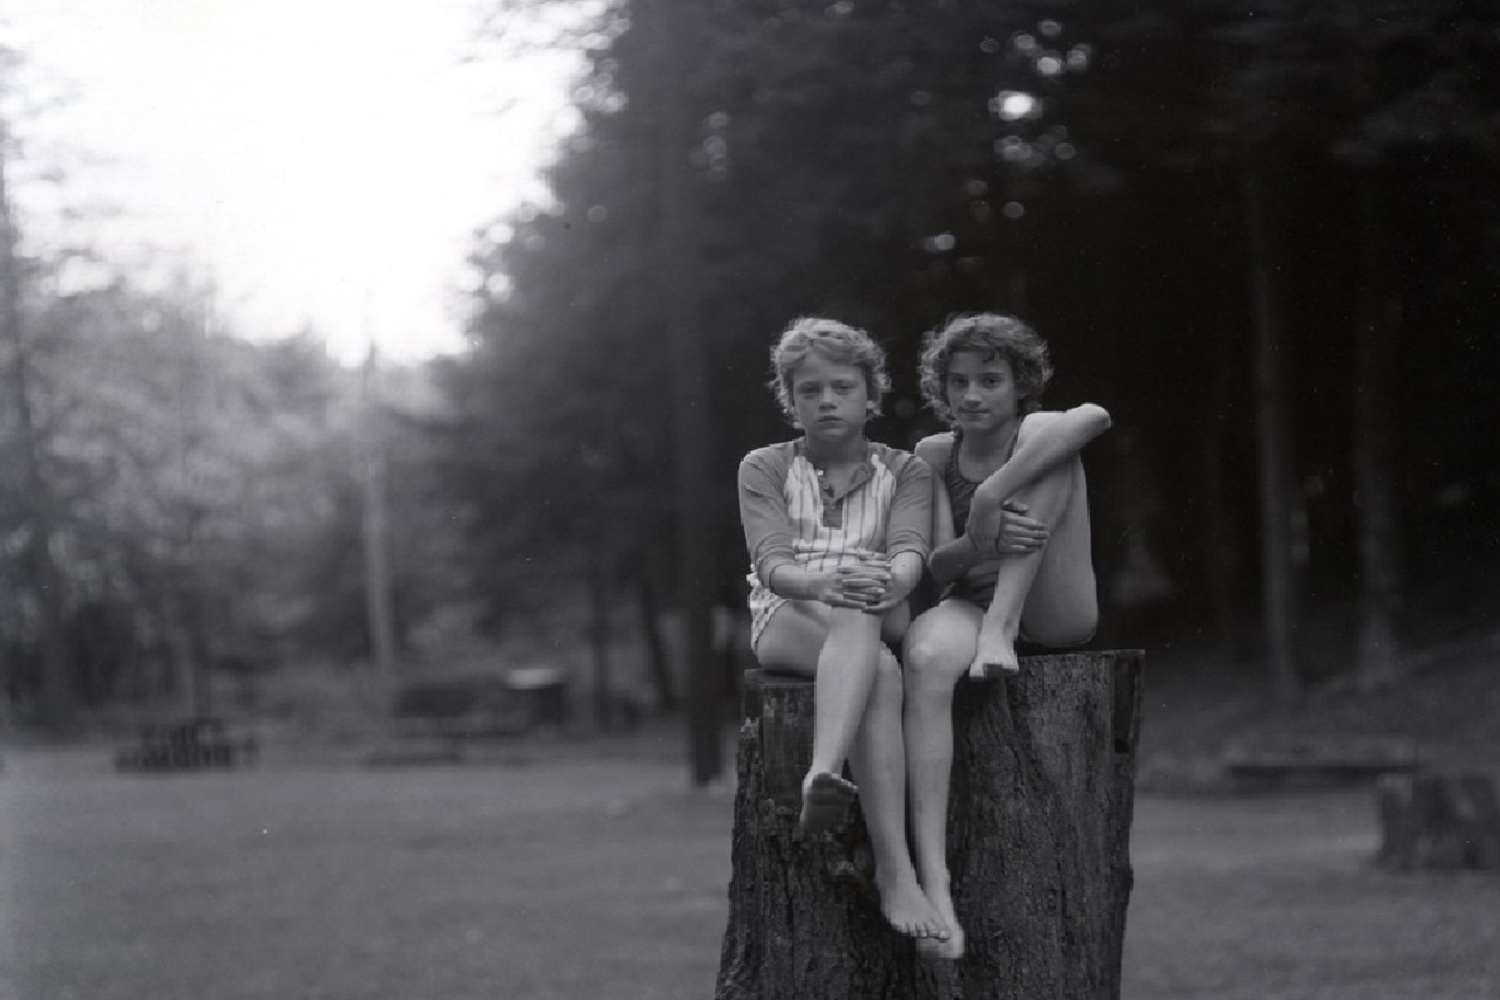 Two kids by Judith Joy Ross